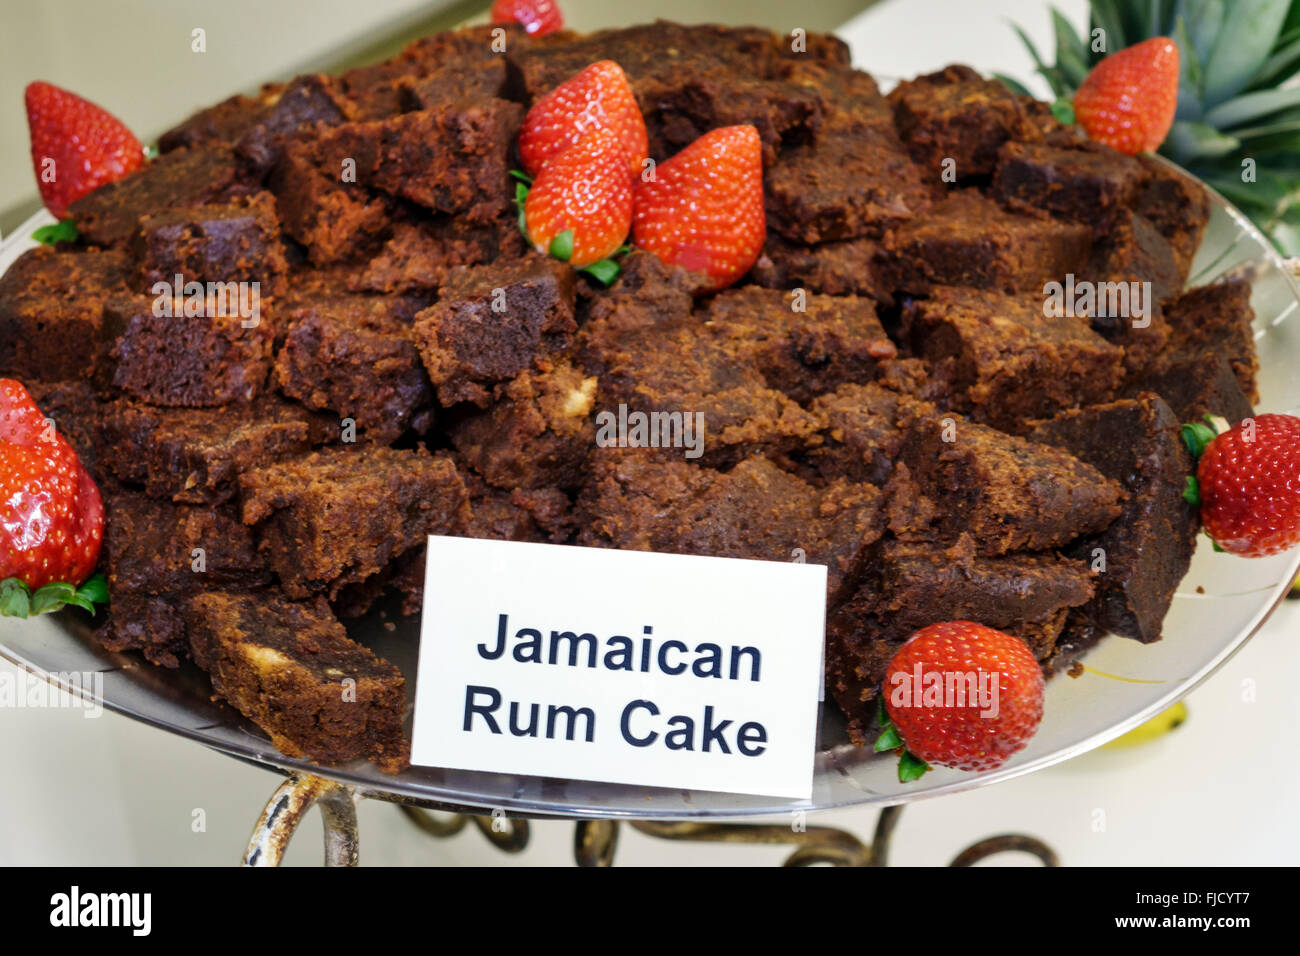 Miami Florida, gâteau jamaïcain au rhum, fraises, desserts, bonbons, les visiteurs voyage visite touristique site touristique monuments culture culture culturelle, vacatio Banque D'Images